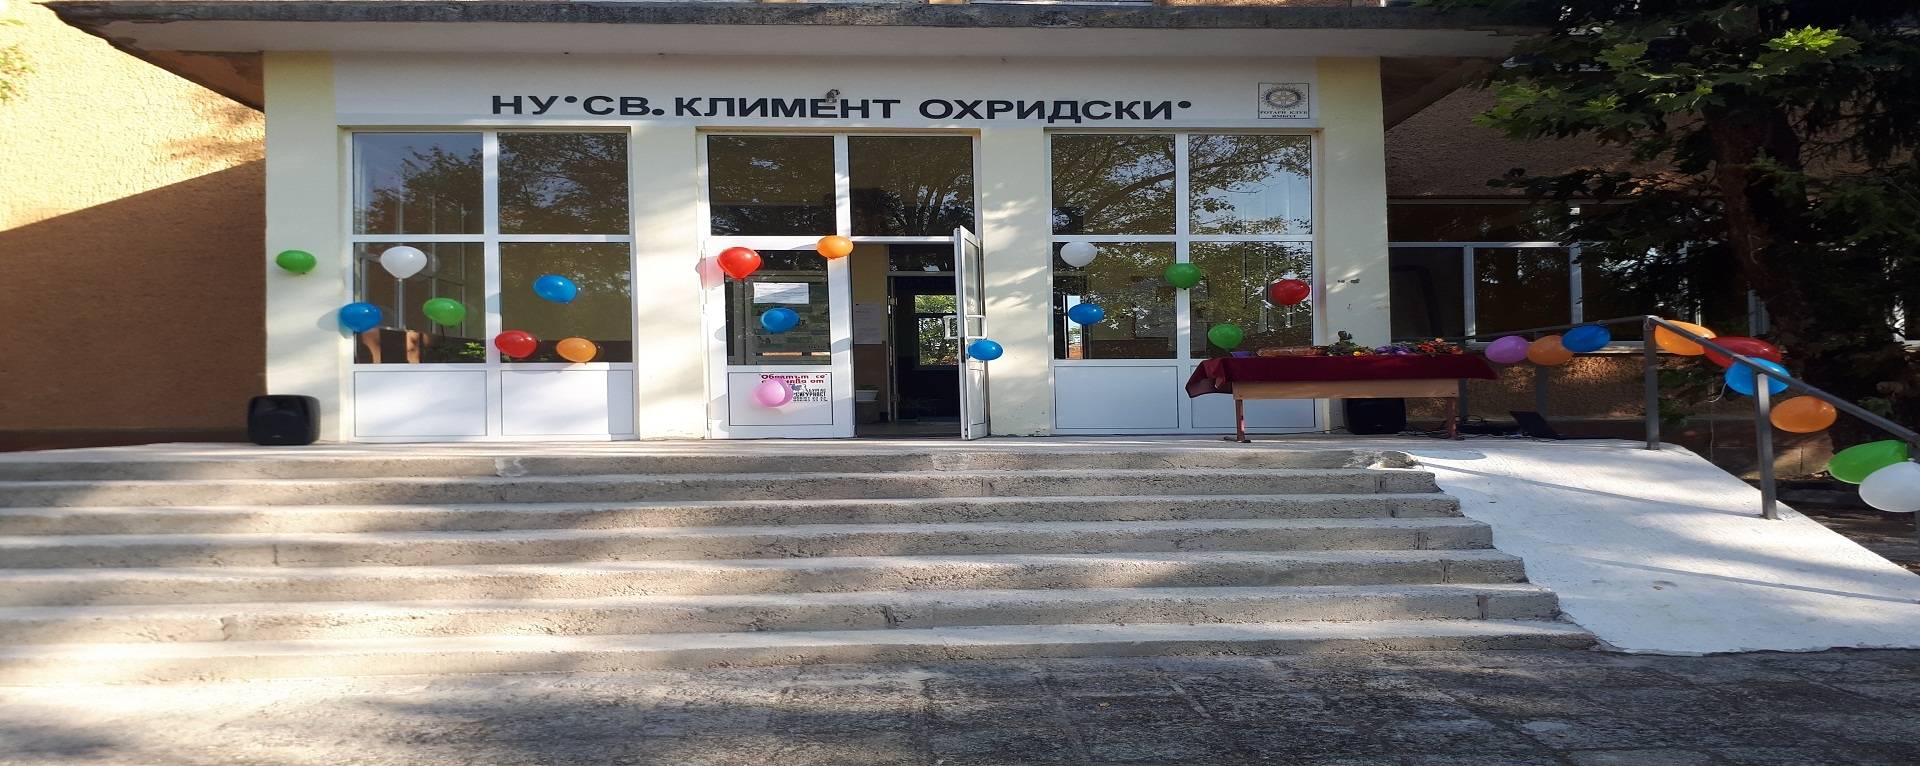 Начално училище "Св. Климент Охридски"